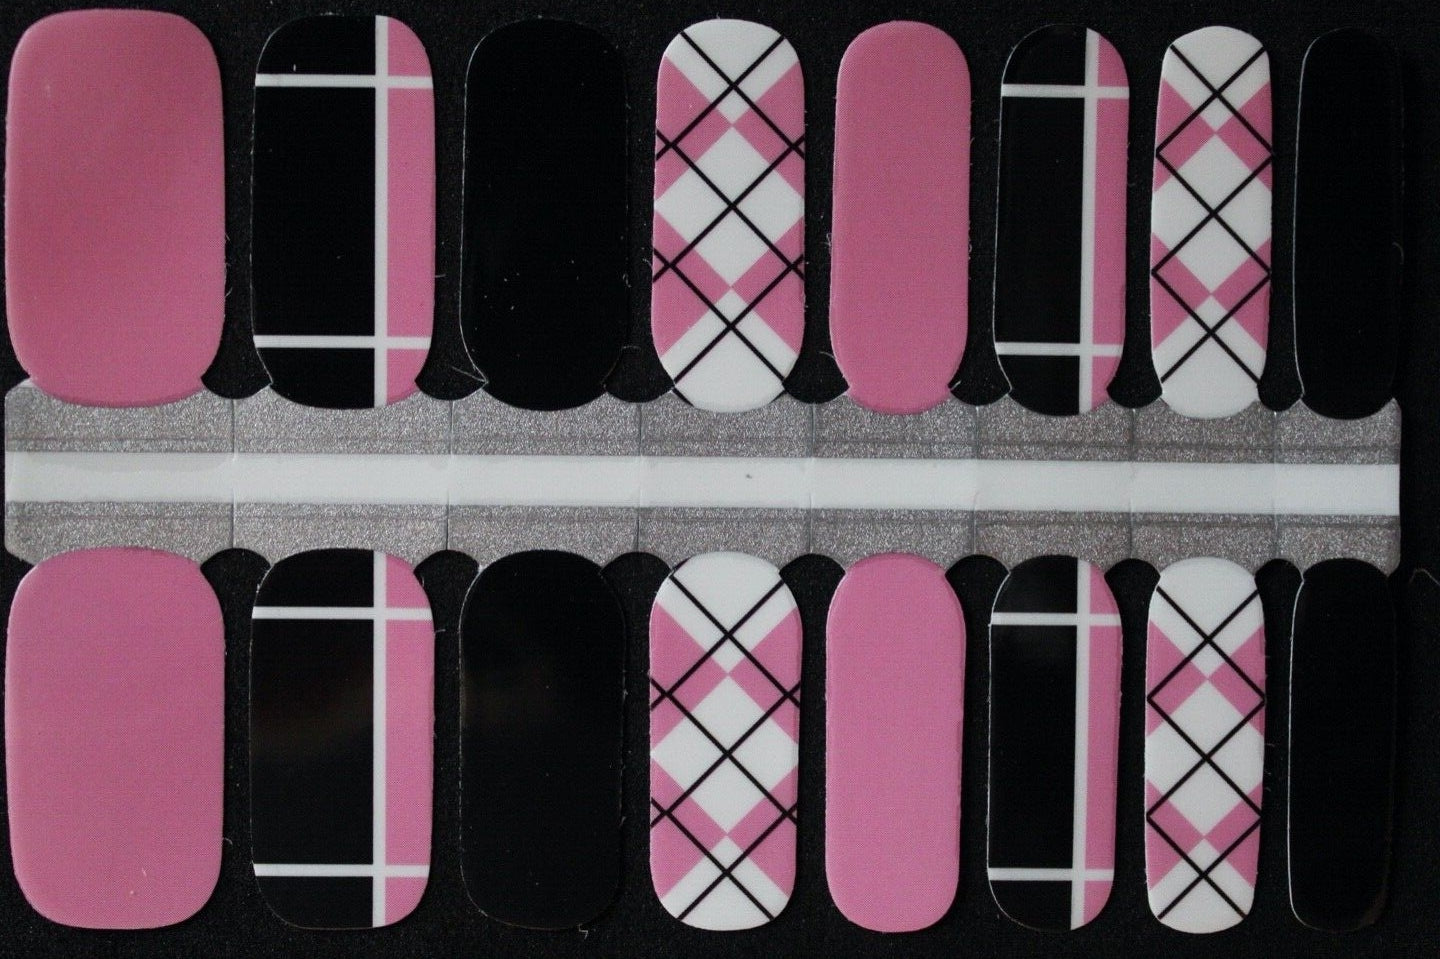 Black pink and white argyle sweater nail polish wraps strips stickers